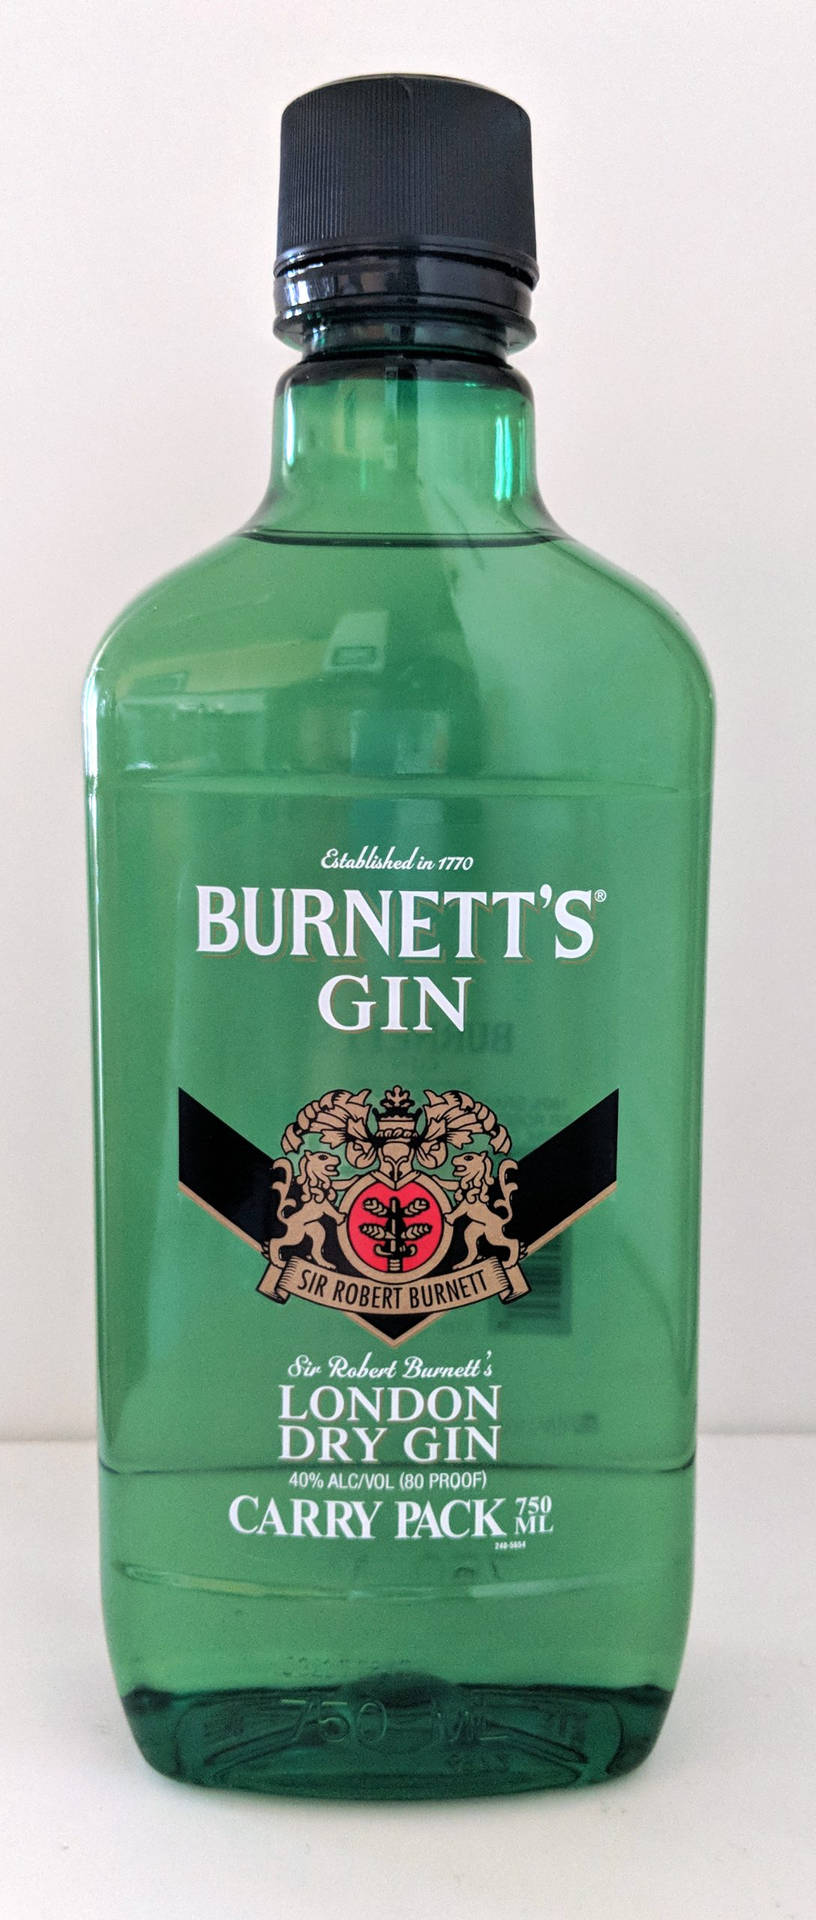 Burnett's Gin Carry Pack Bottle Wallpaper